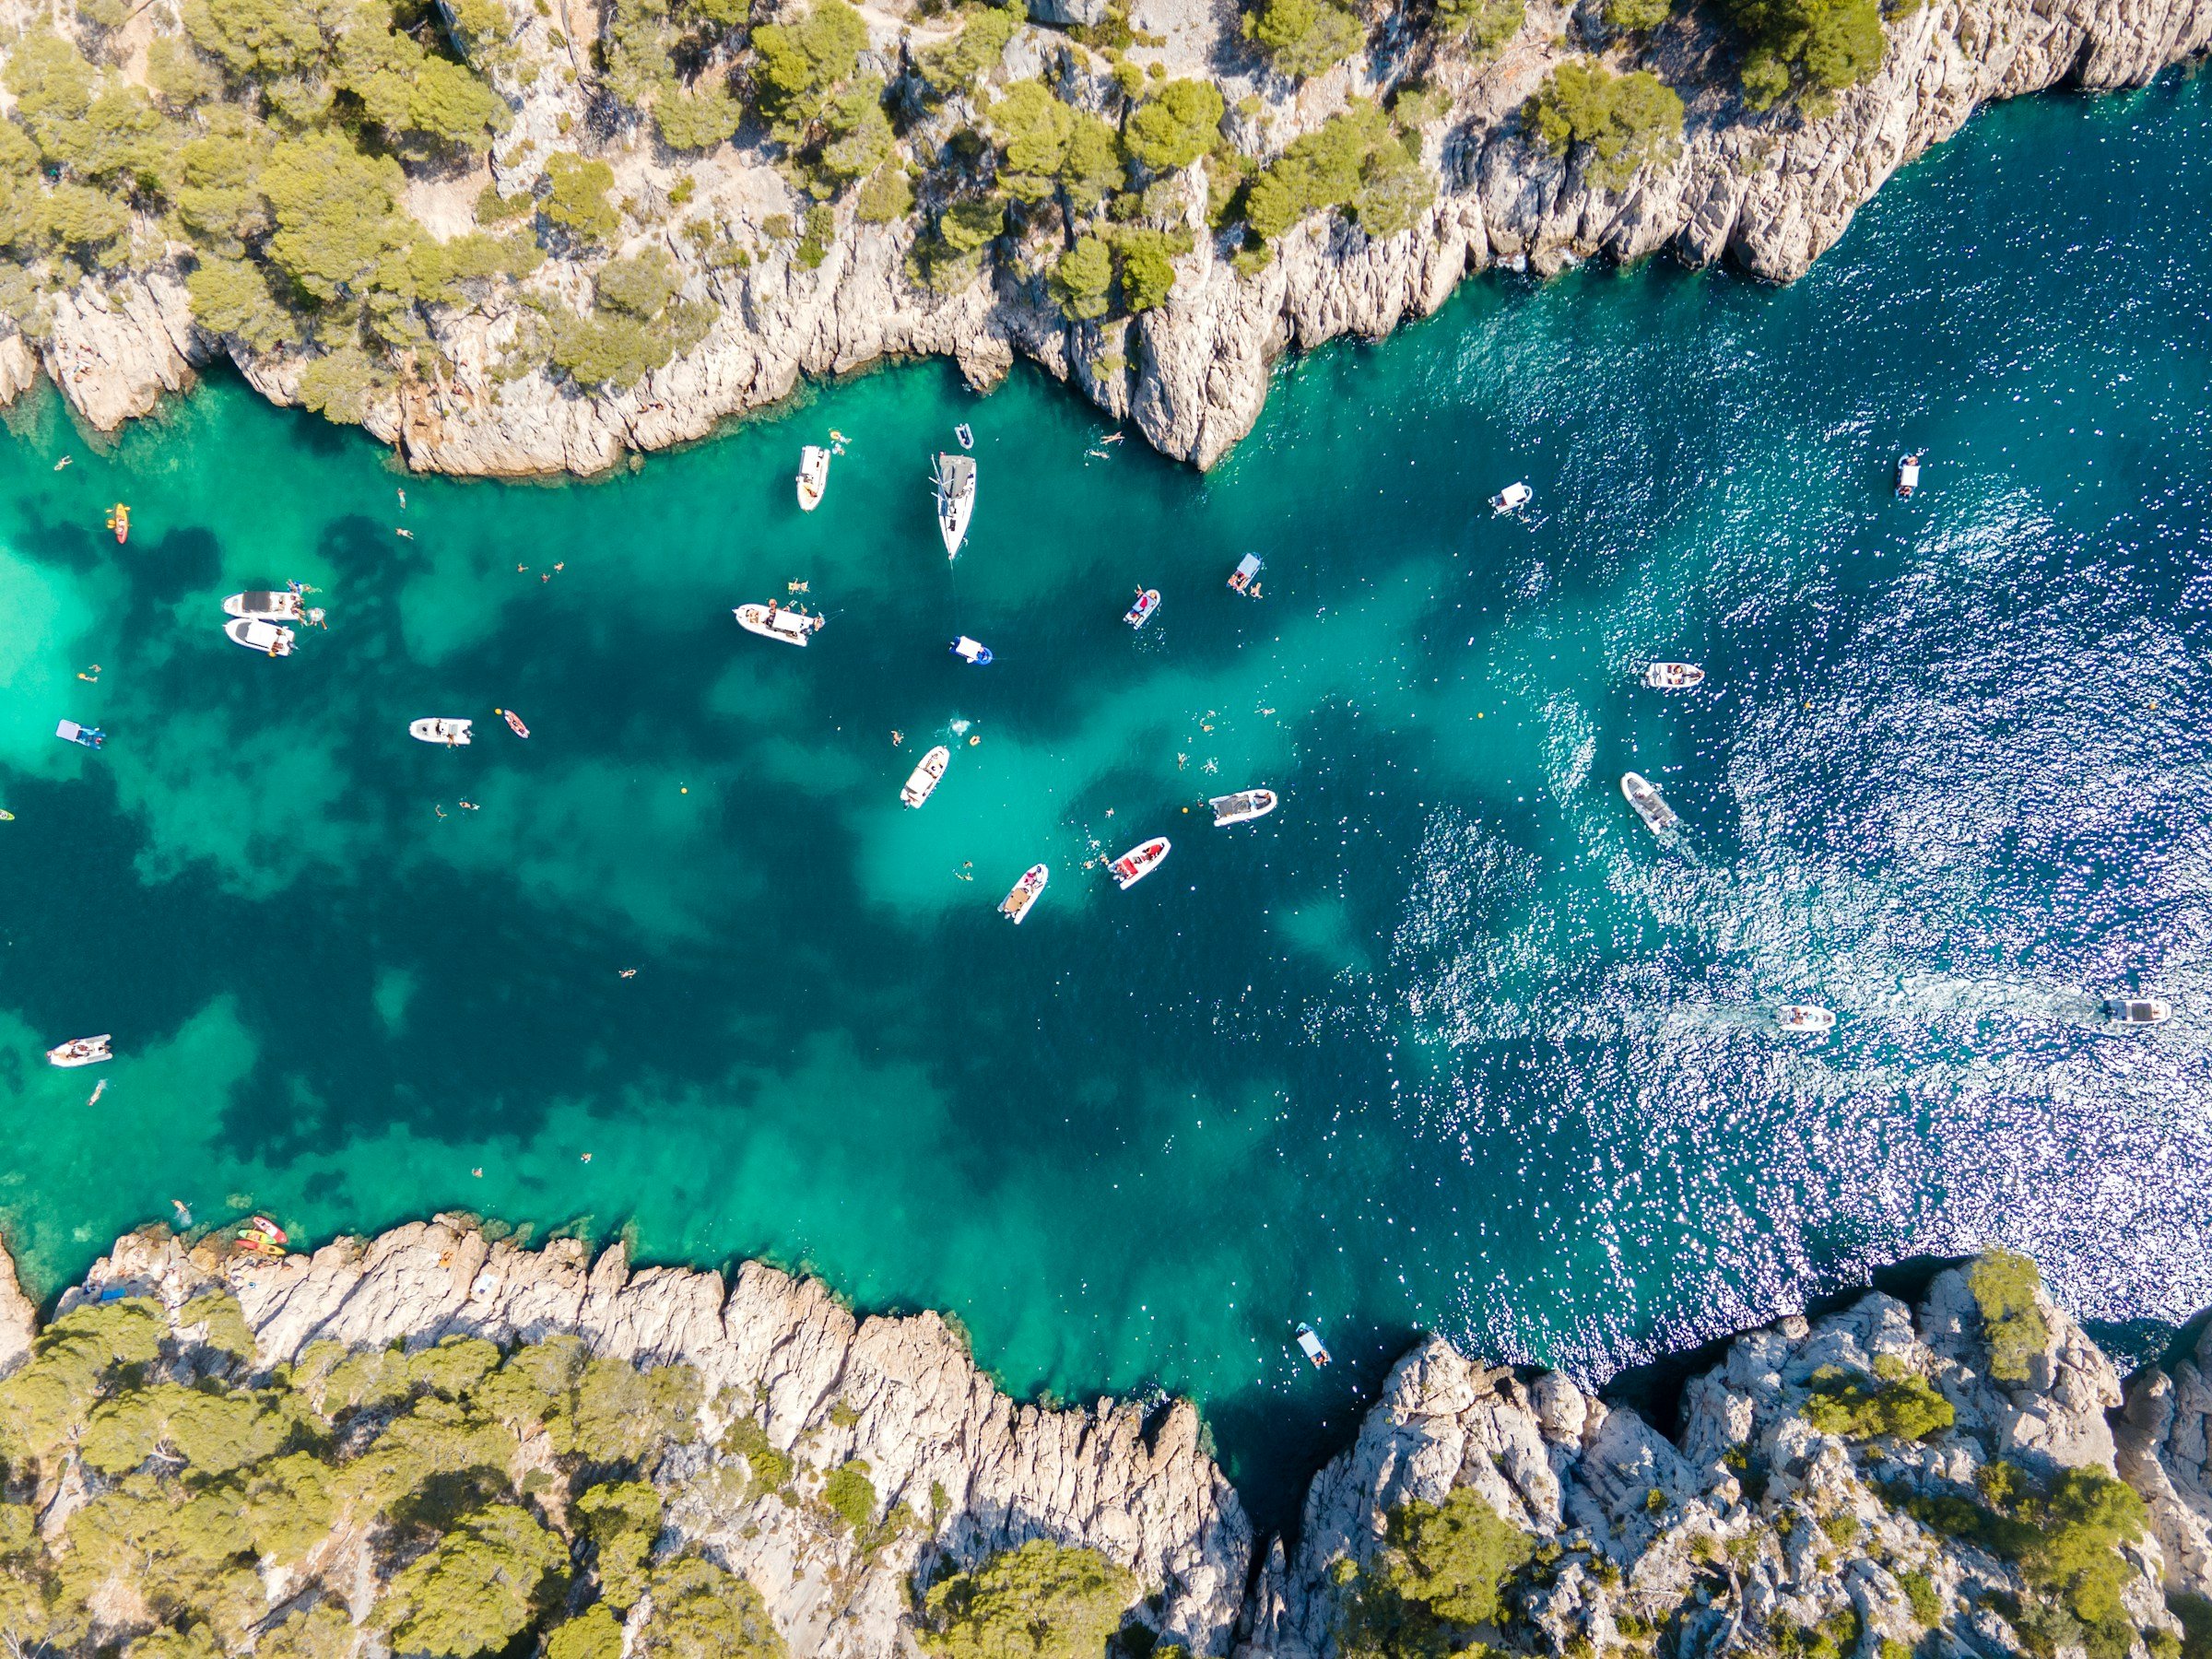 Flygbild av båtar som ankrar i det klara turkosblå vattnet vid en klippig kustlinje i Marseille.